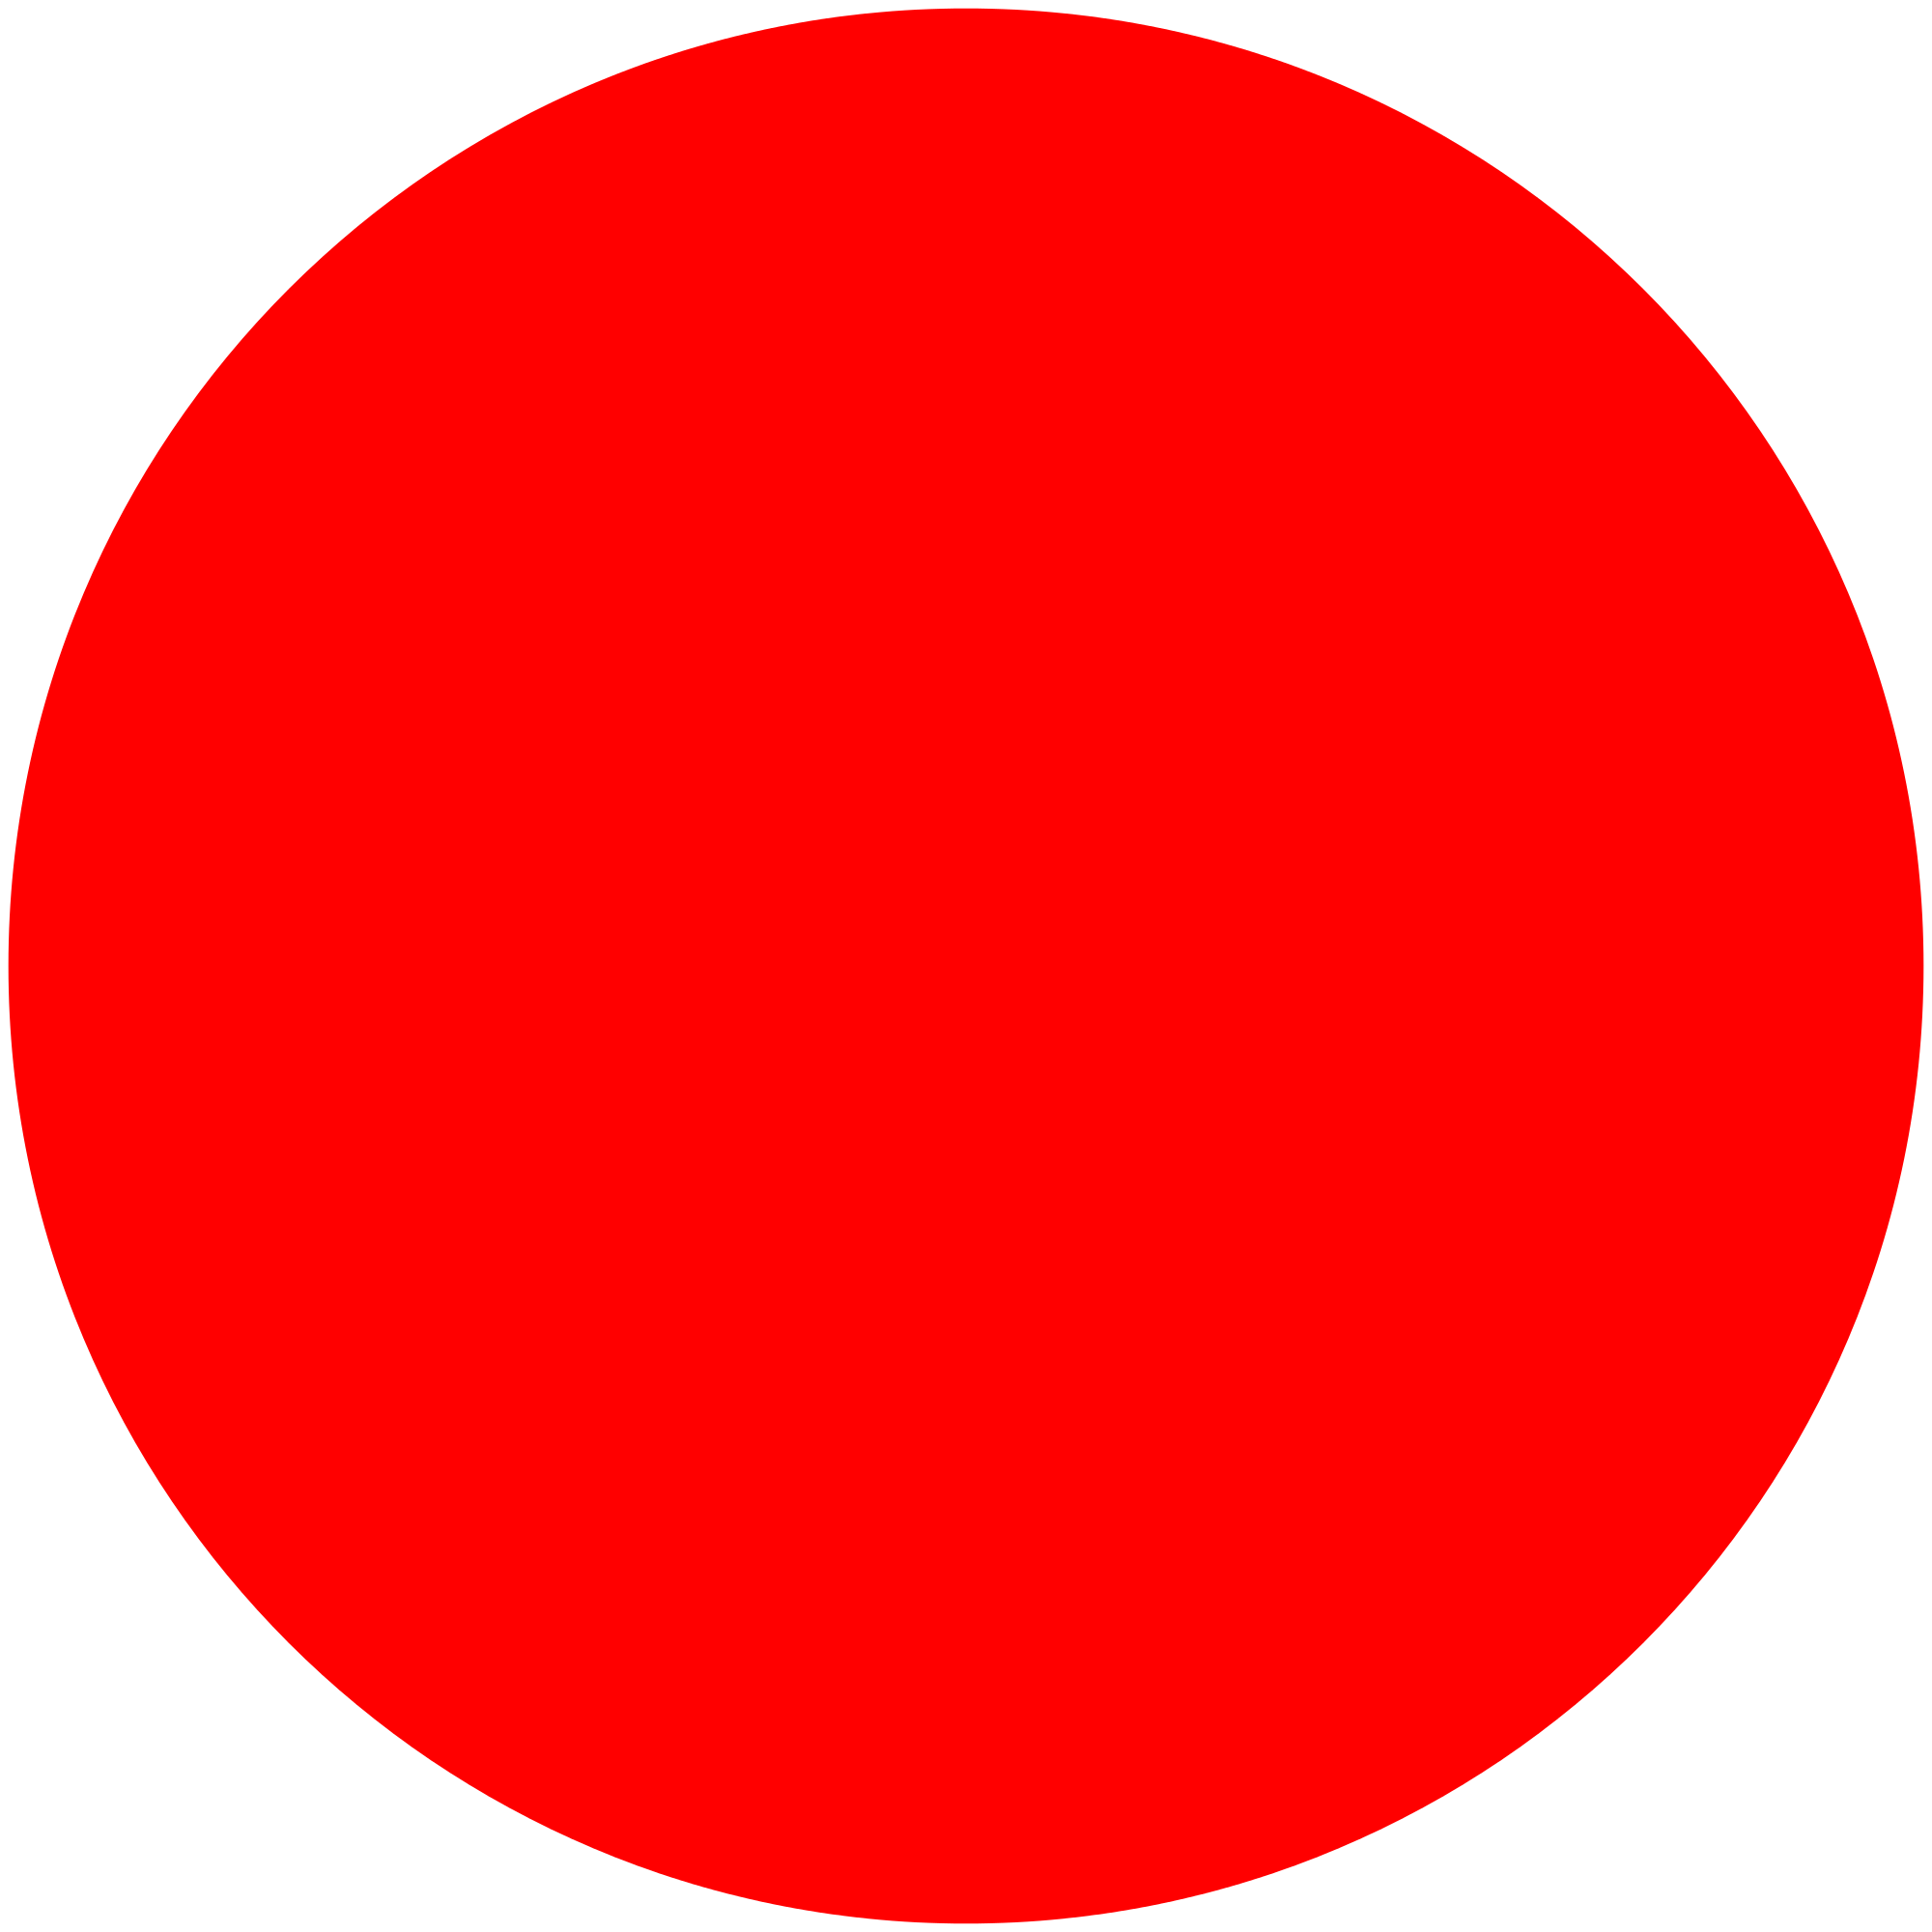 Circle l. Красный круг. Круг красного цвета. Большой красный круг. Круг закрашенный.